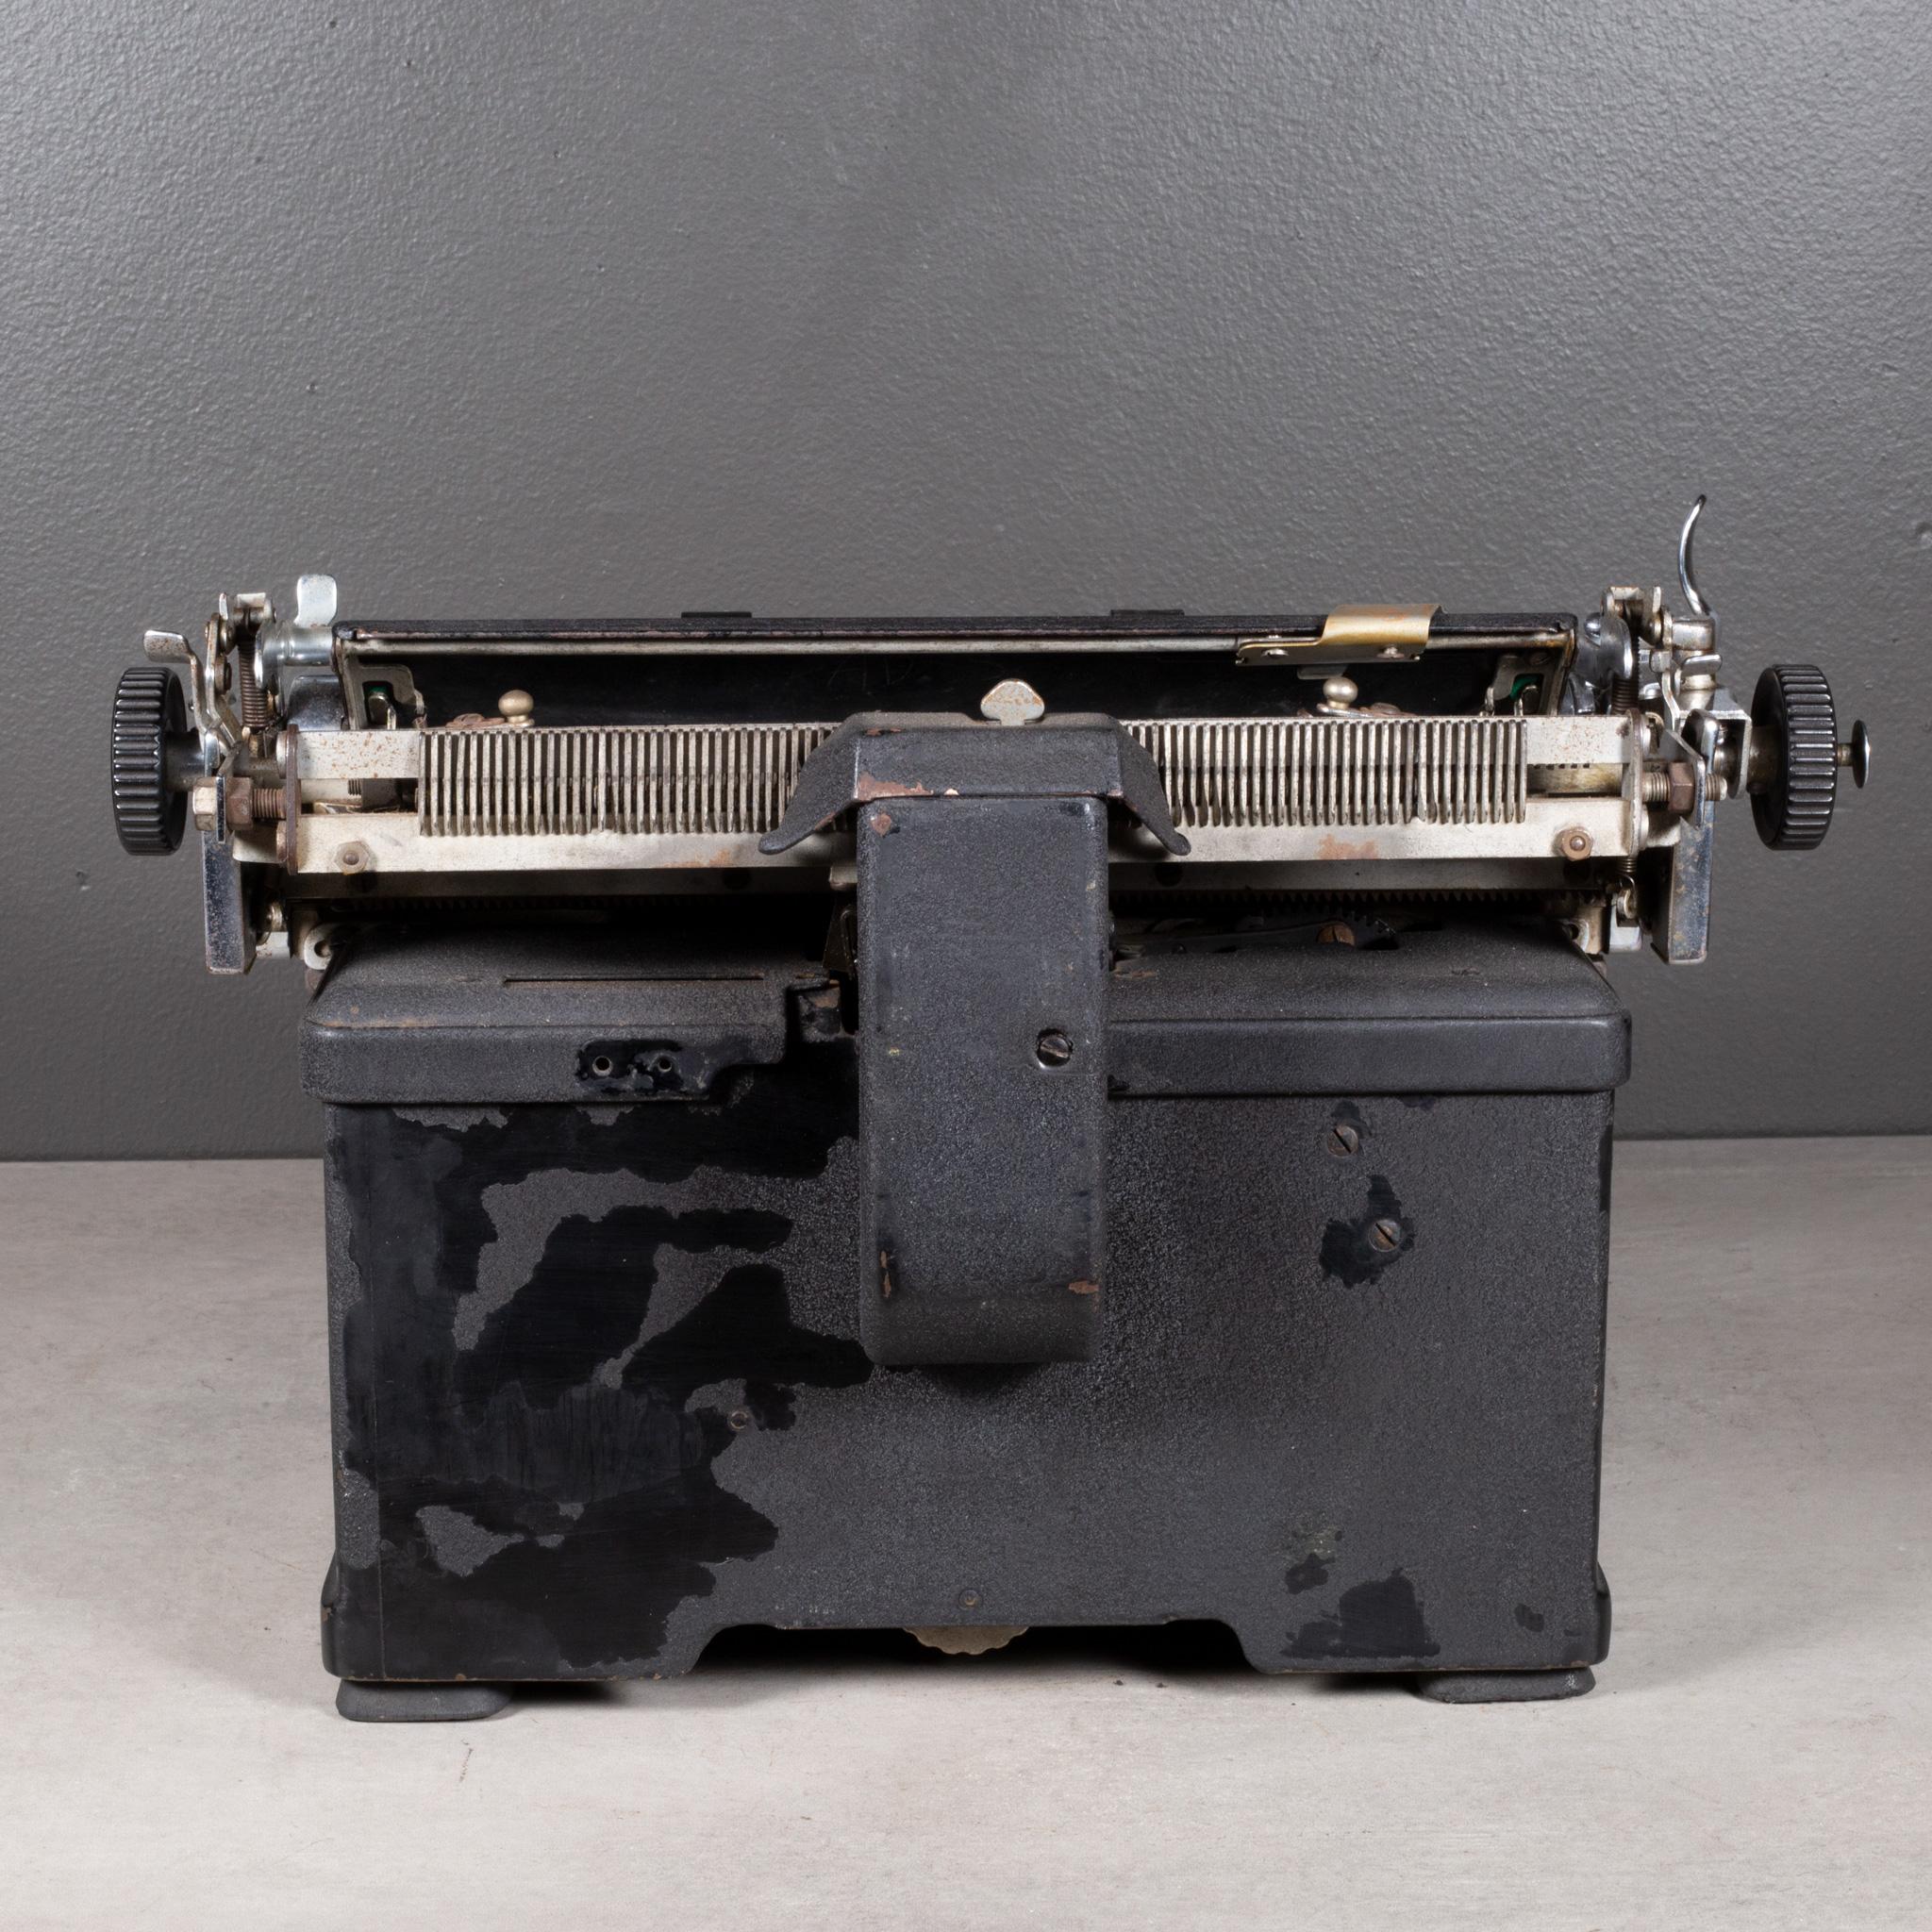 vintage royal typewriter